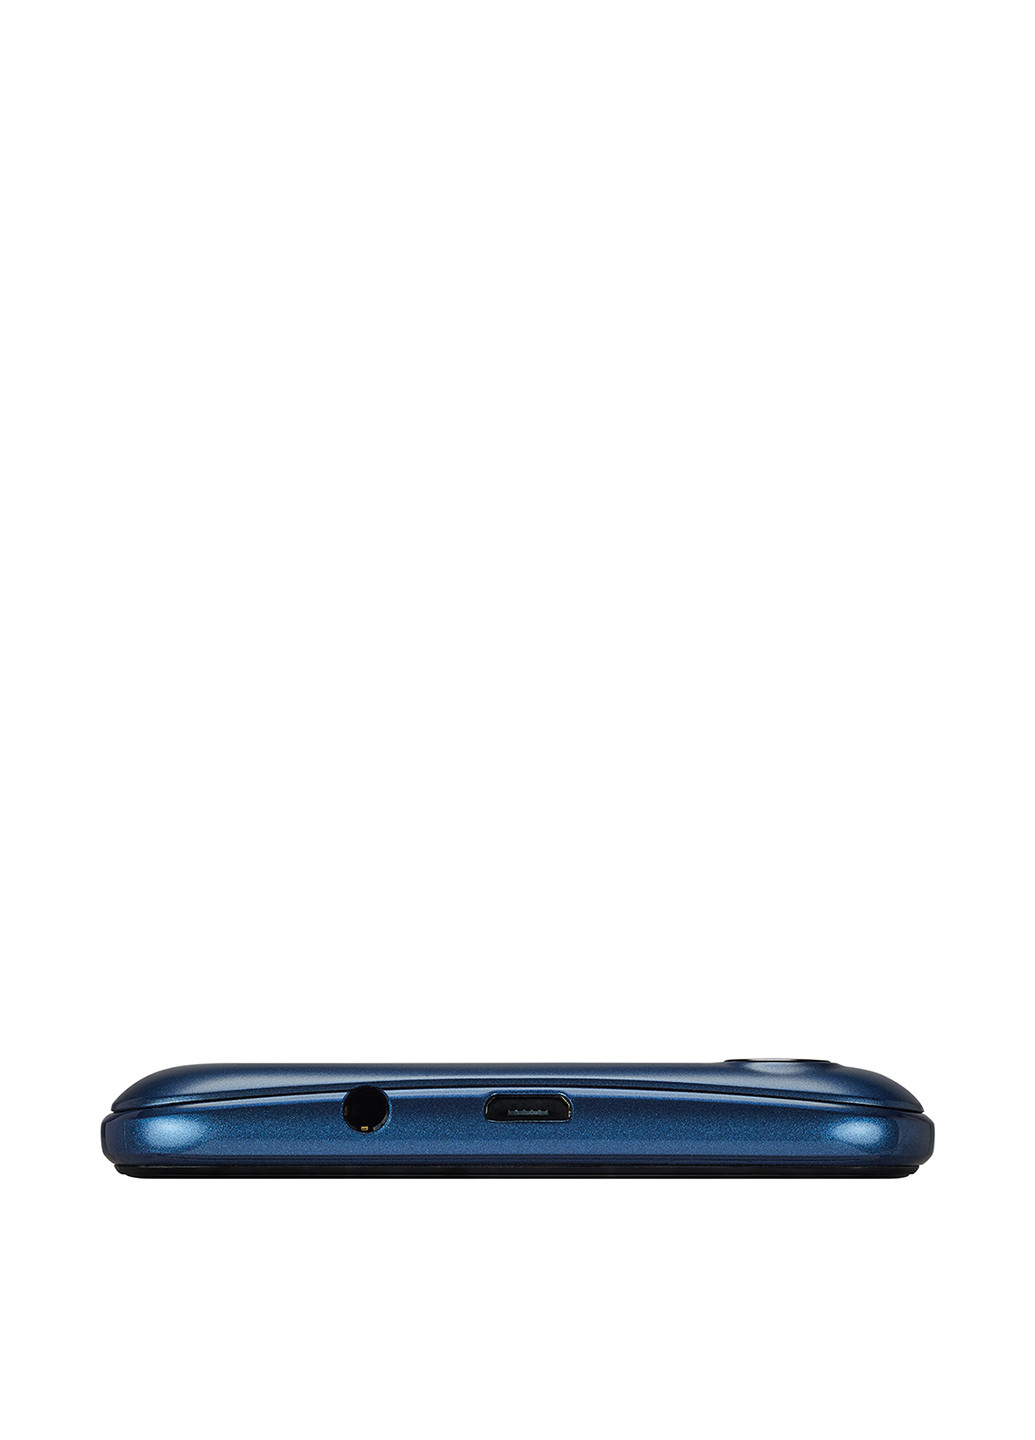 Смартфон Muze F5 LTE 2 / 16GB Blue (PSP5553DUOBLUE) Prestigio muze f5 lte 2/16gb blue (psp5553duoblue) (130101642)